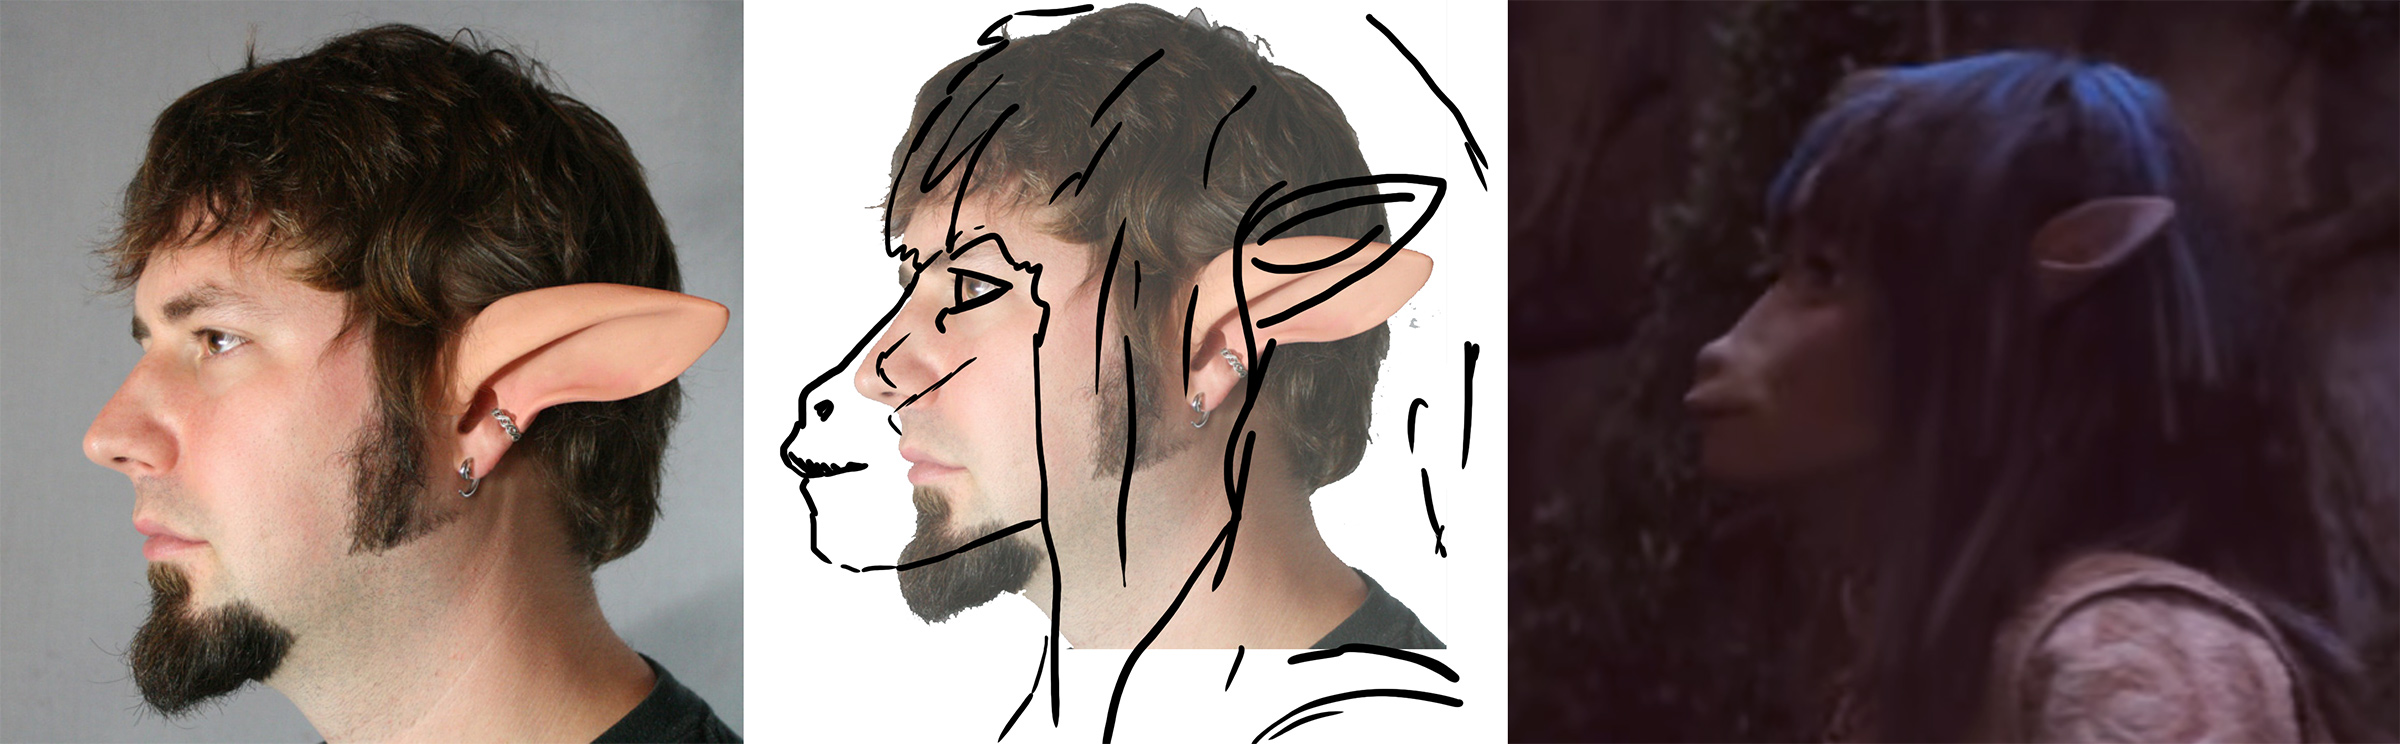 gelfling ears vs faun ears - placement